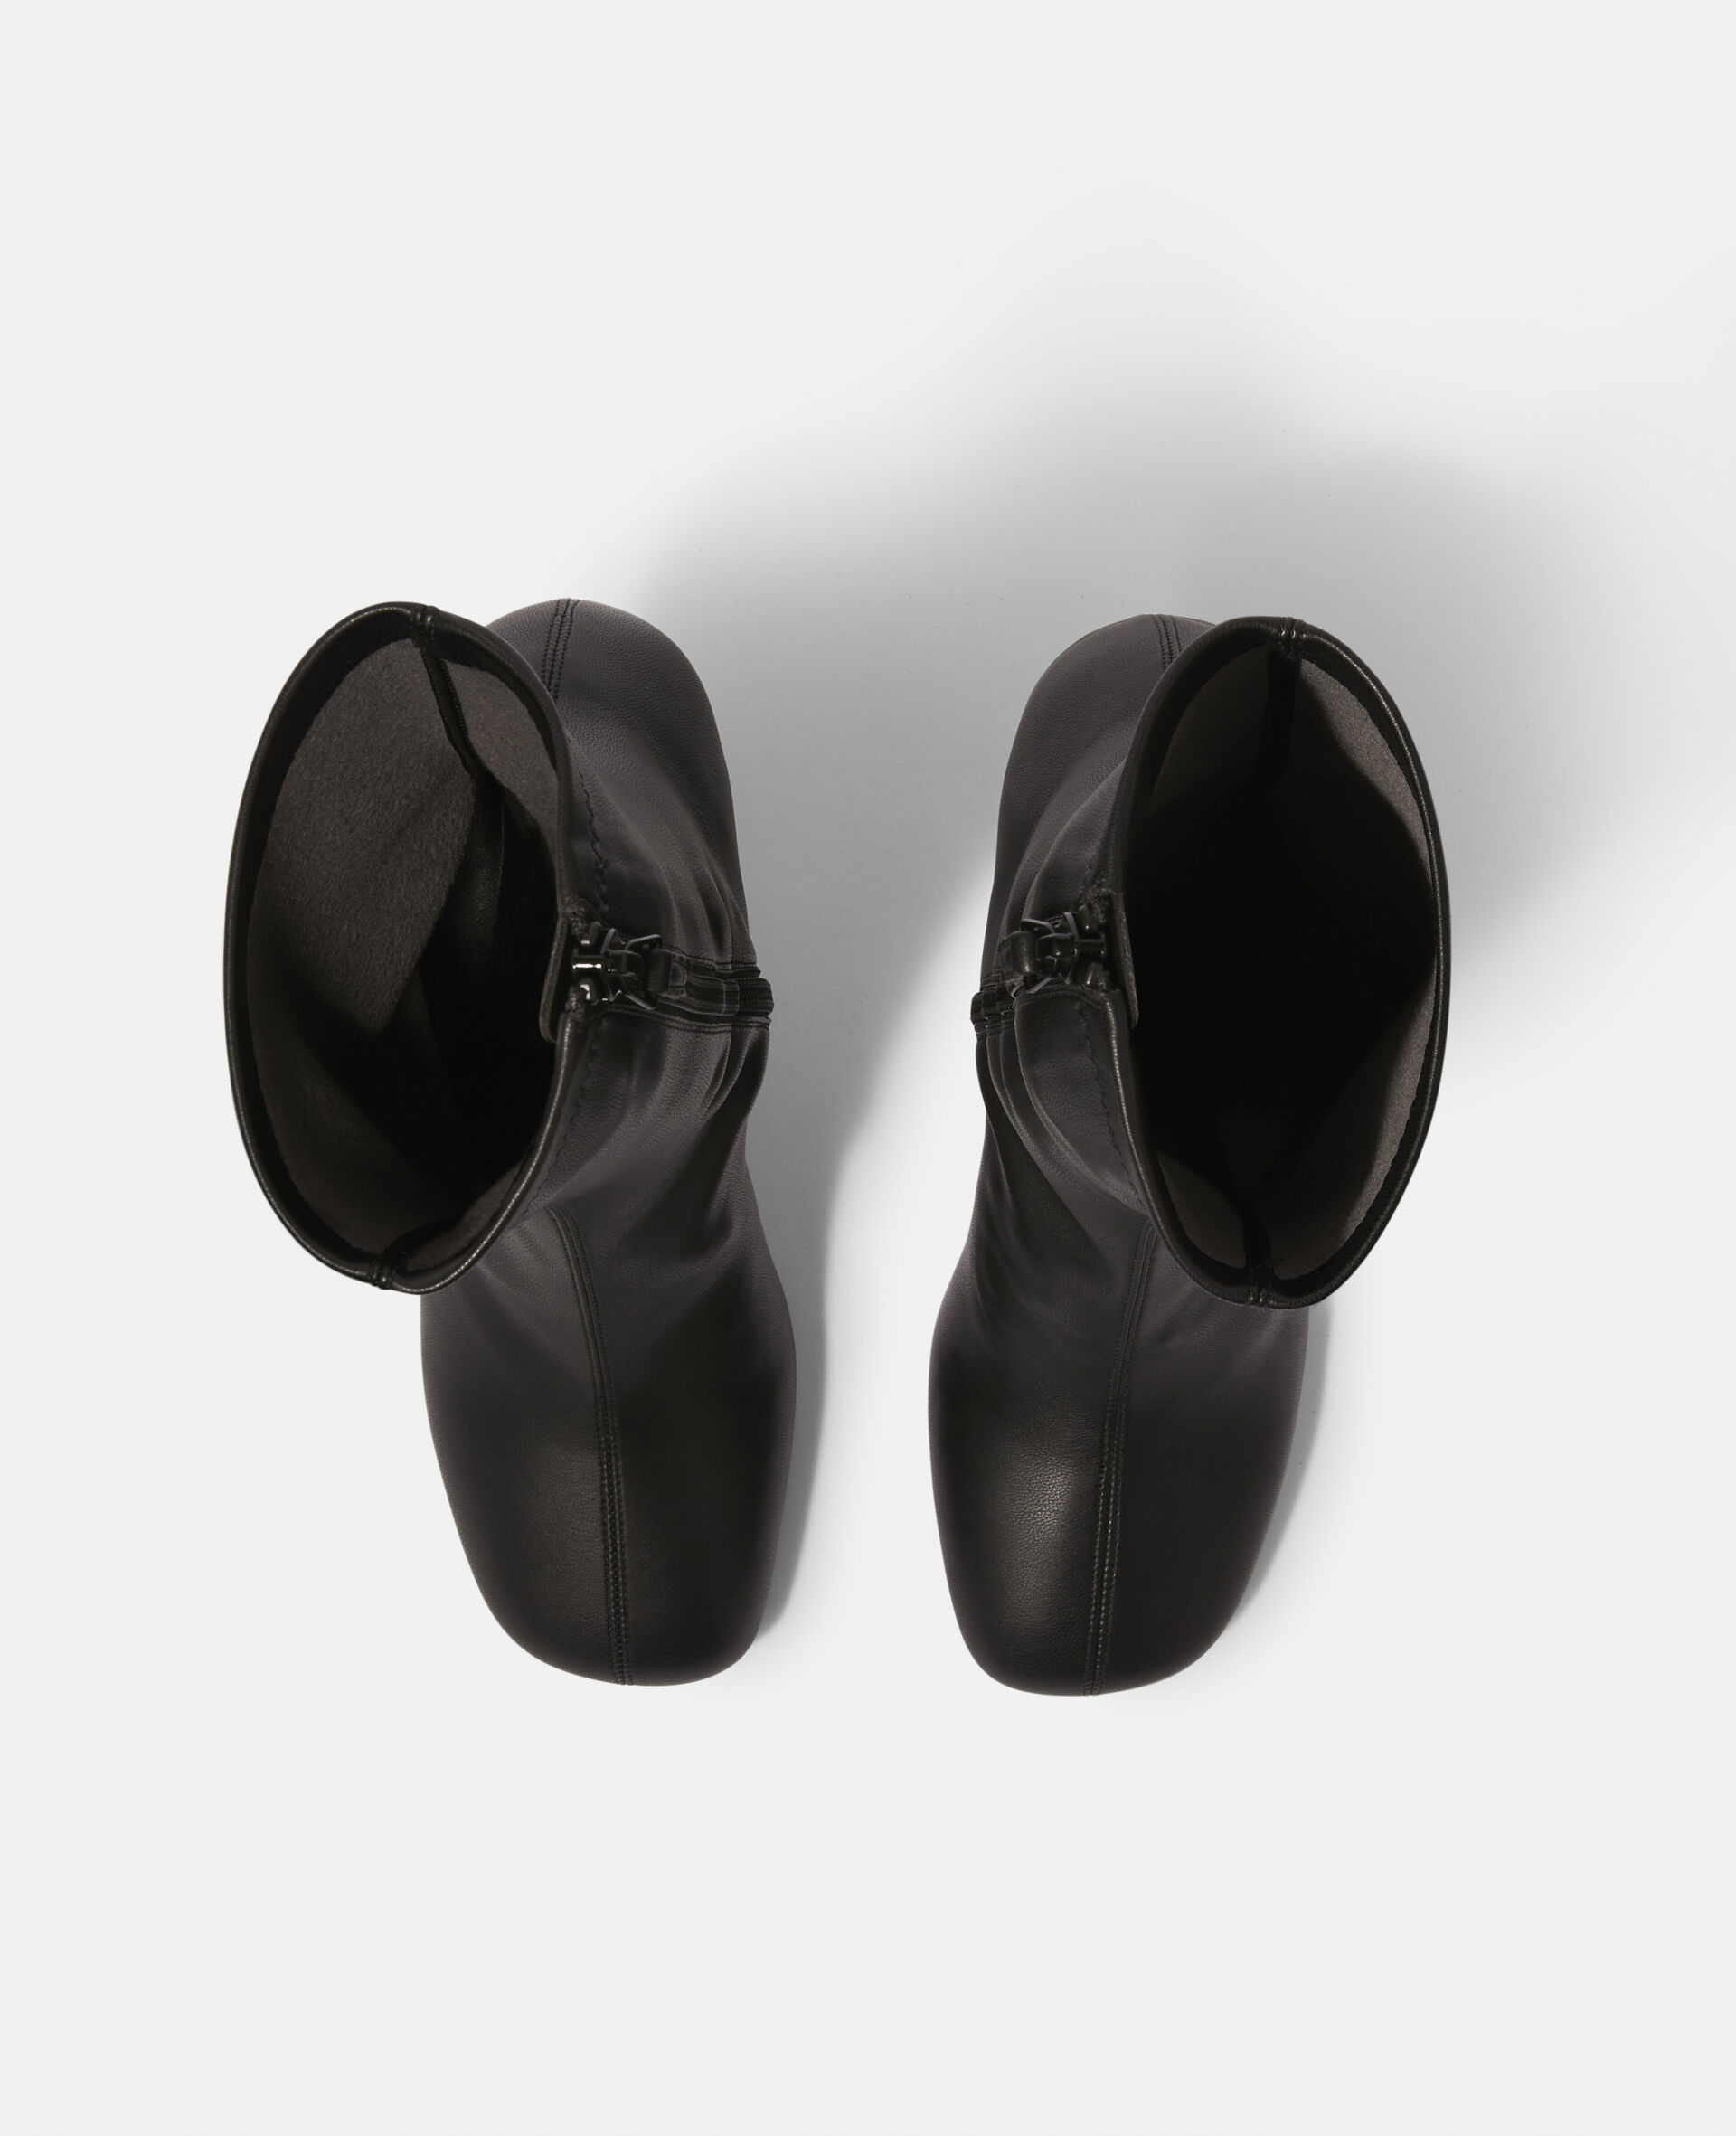 Shroom Heel Boots-Black-large image number 3